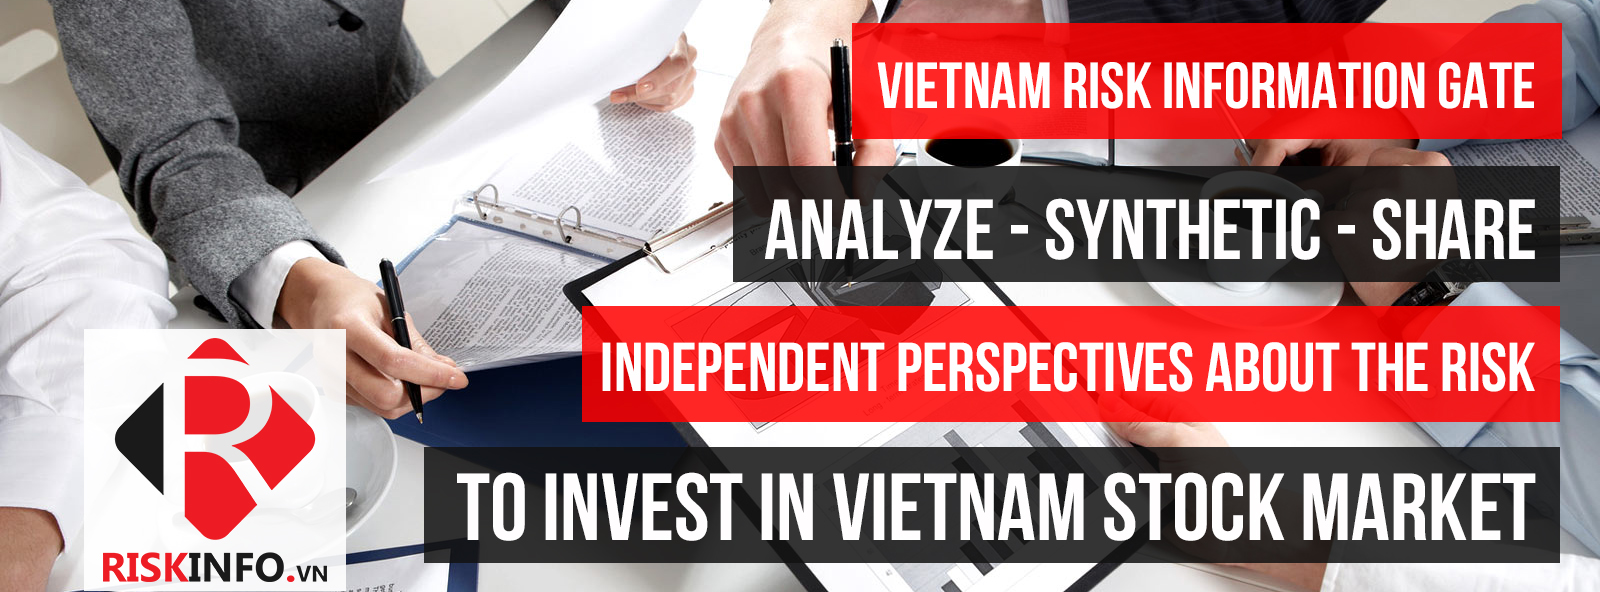 Vietnam Risk Information Gate